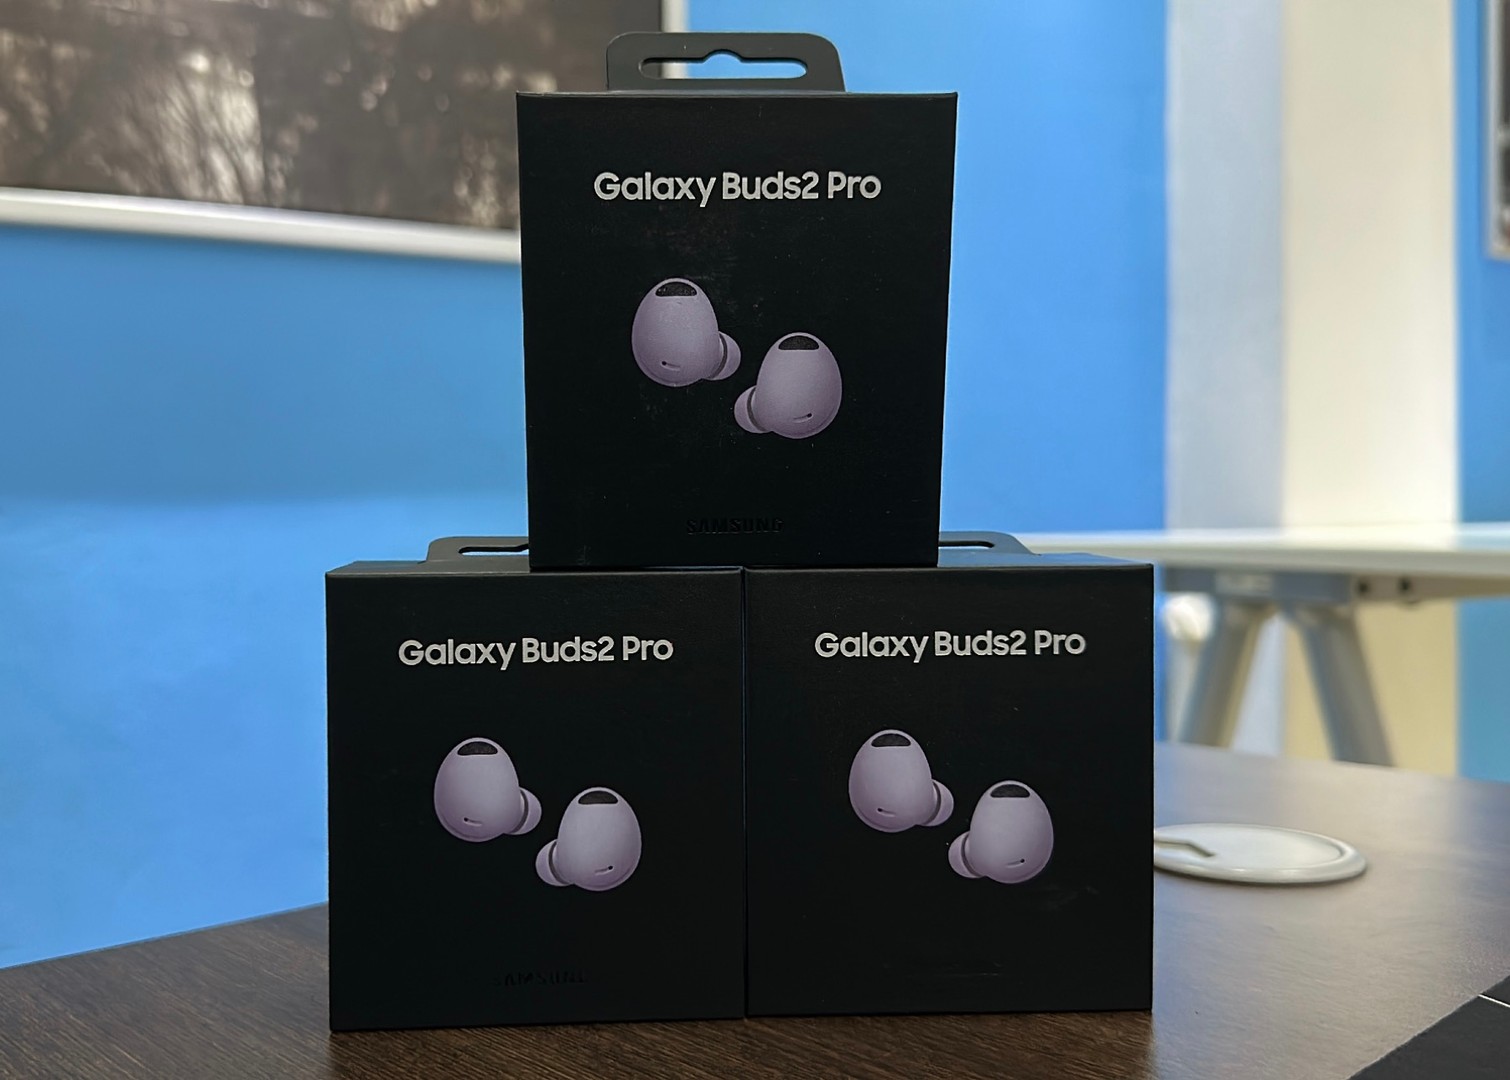 camaras y audio - Vendo Audífonos Galaxy Buds2 Pro Morados Nuevos | Originales , RD$ 9,500 NEG